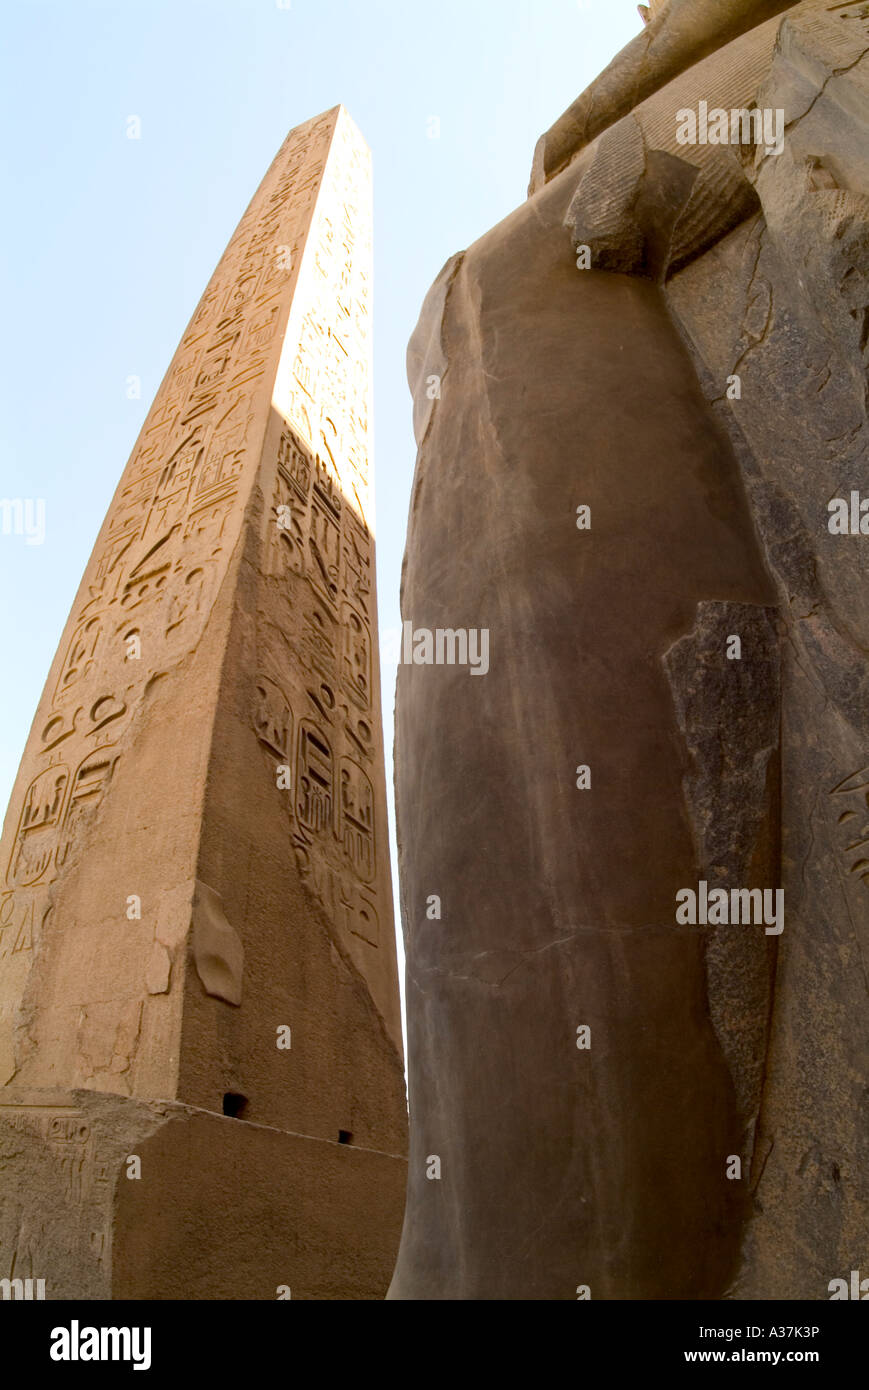 Tempio di Luxor obelisco simboli geroglifici figure statua colossale faraone Luxor Egitto Nord Africa Foto Stock